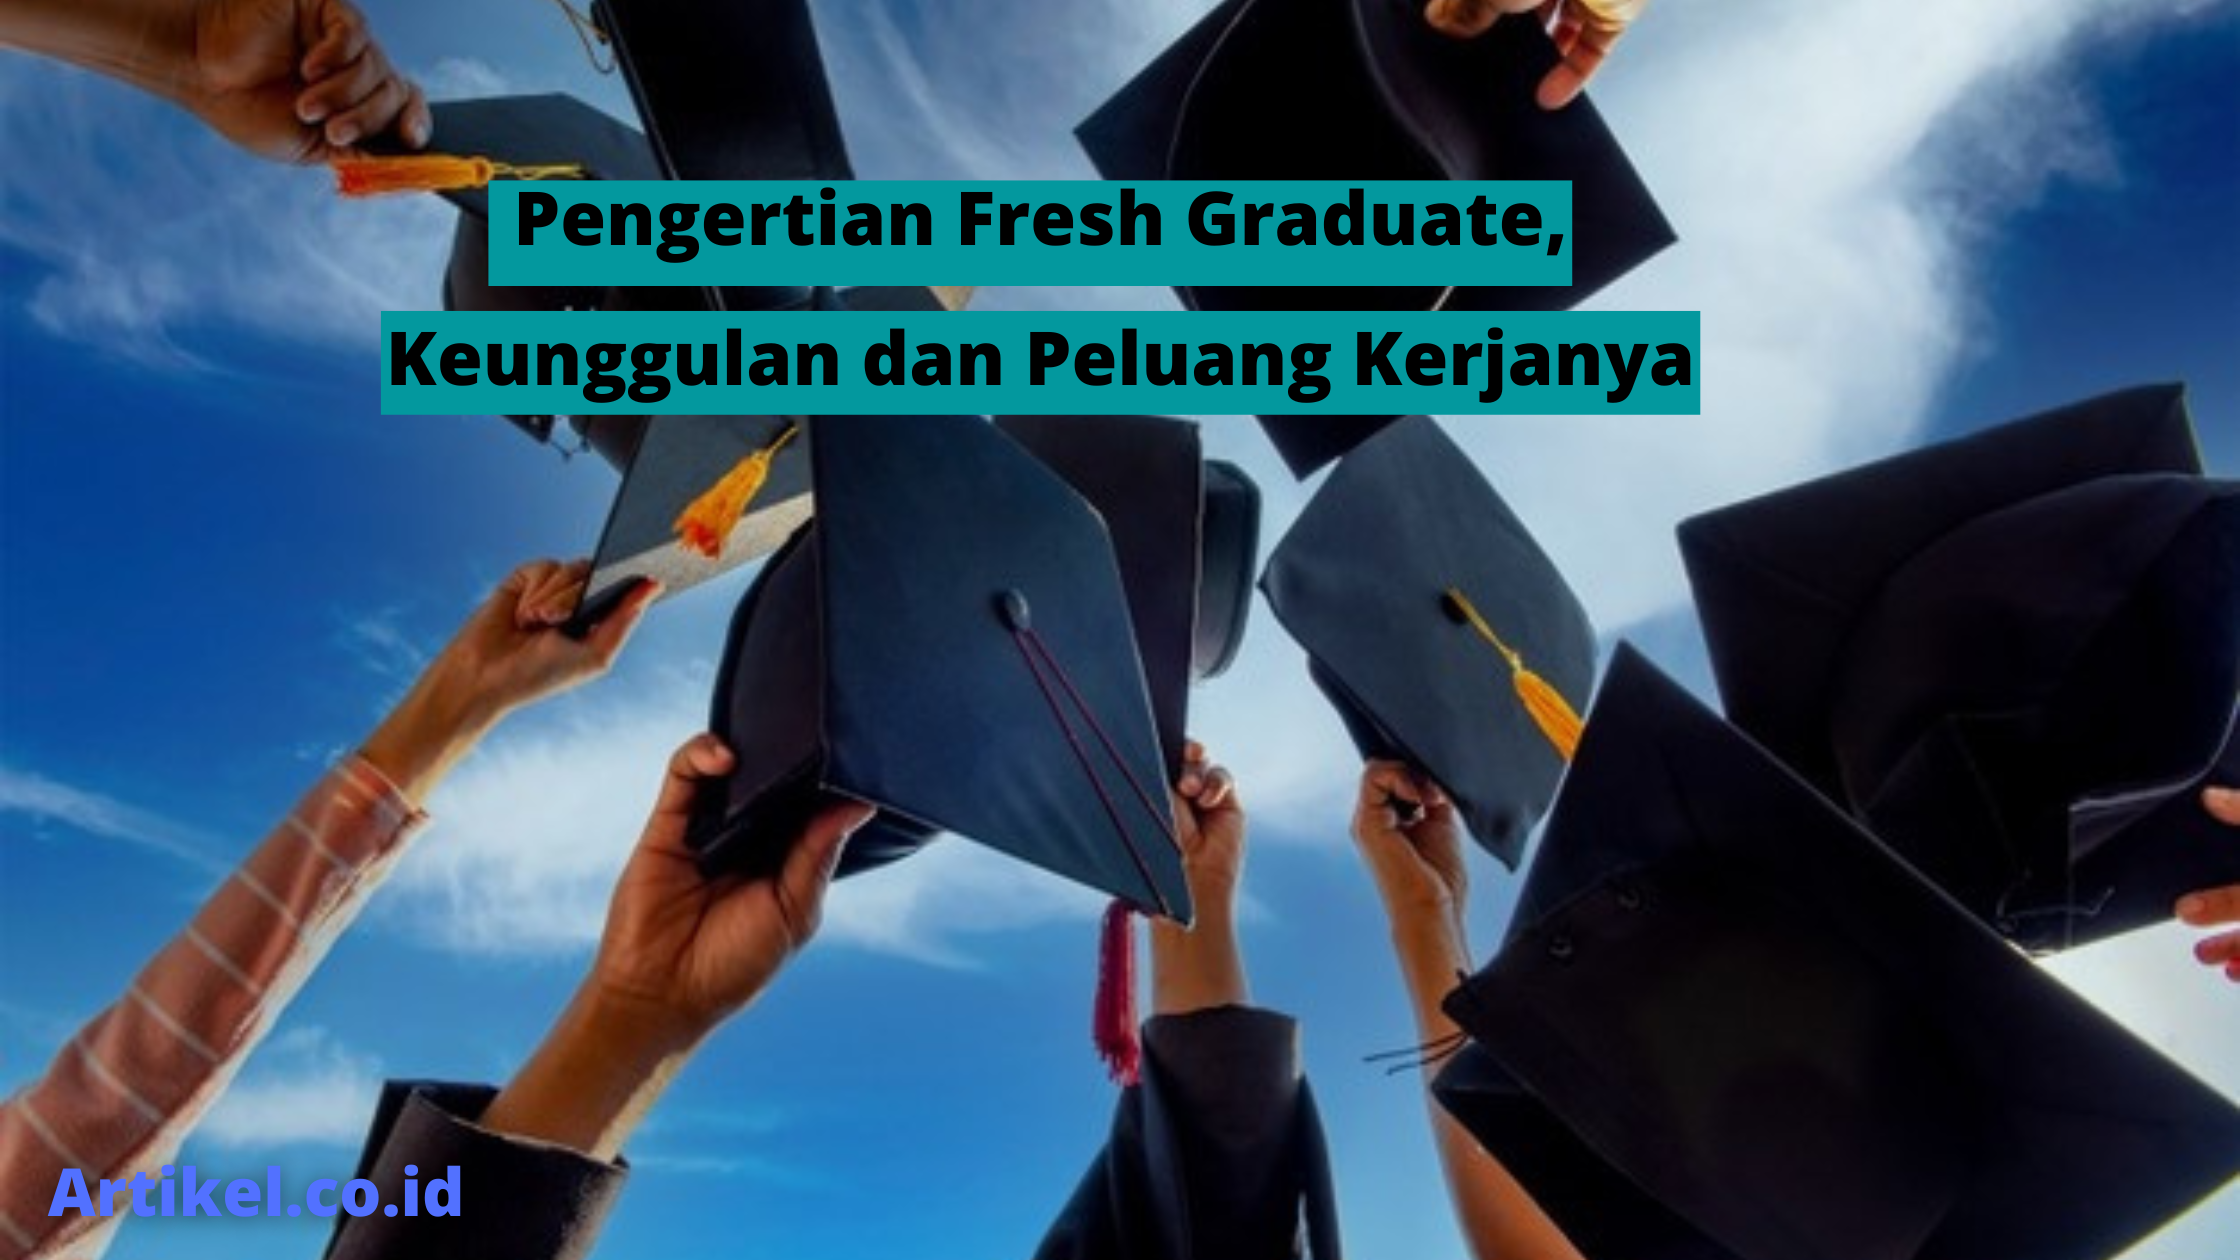 Pengertian Fresh Graduate, Keunggulan dan Peluang Kerjanya